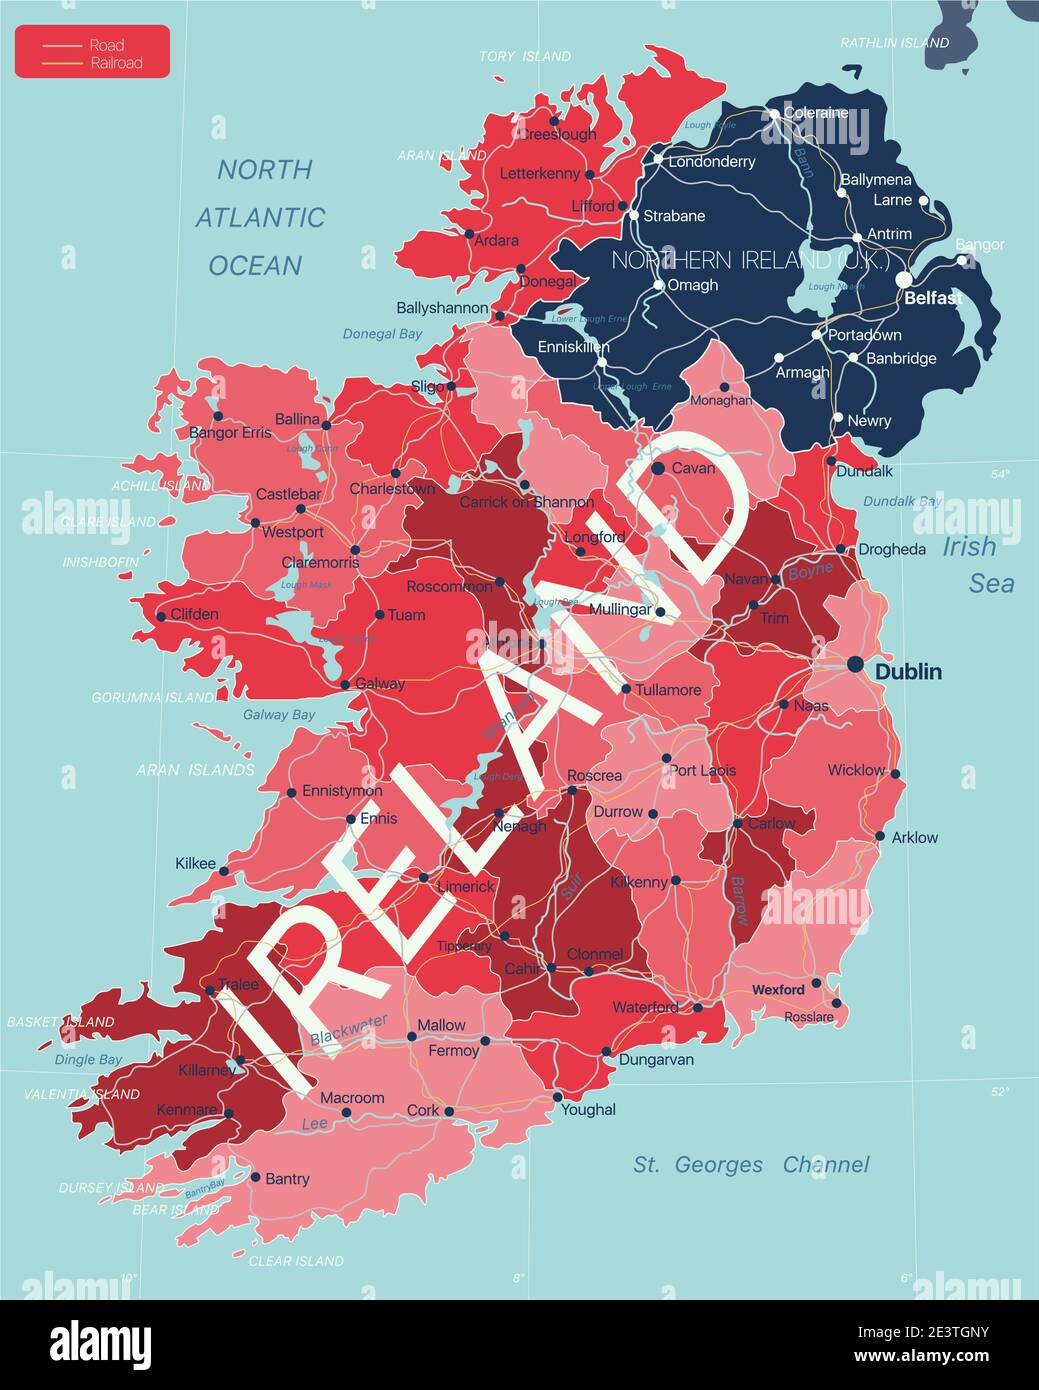 Irland Land detaillierte editierbare Karte mit Regionen Städte und Städte, Straßen und Eisenbahnen, geografische Standorte. Vector EPS-10-Datei Stock Vektor